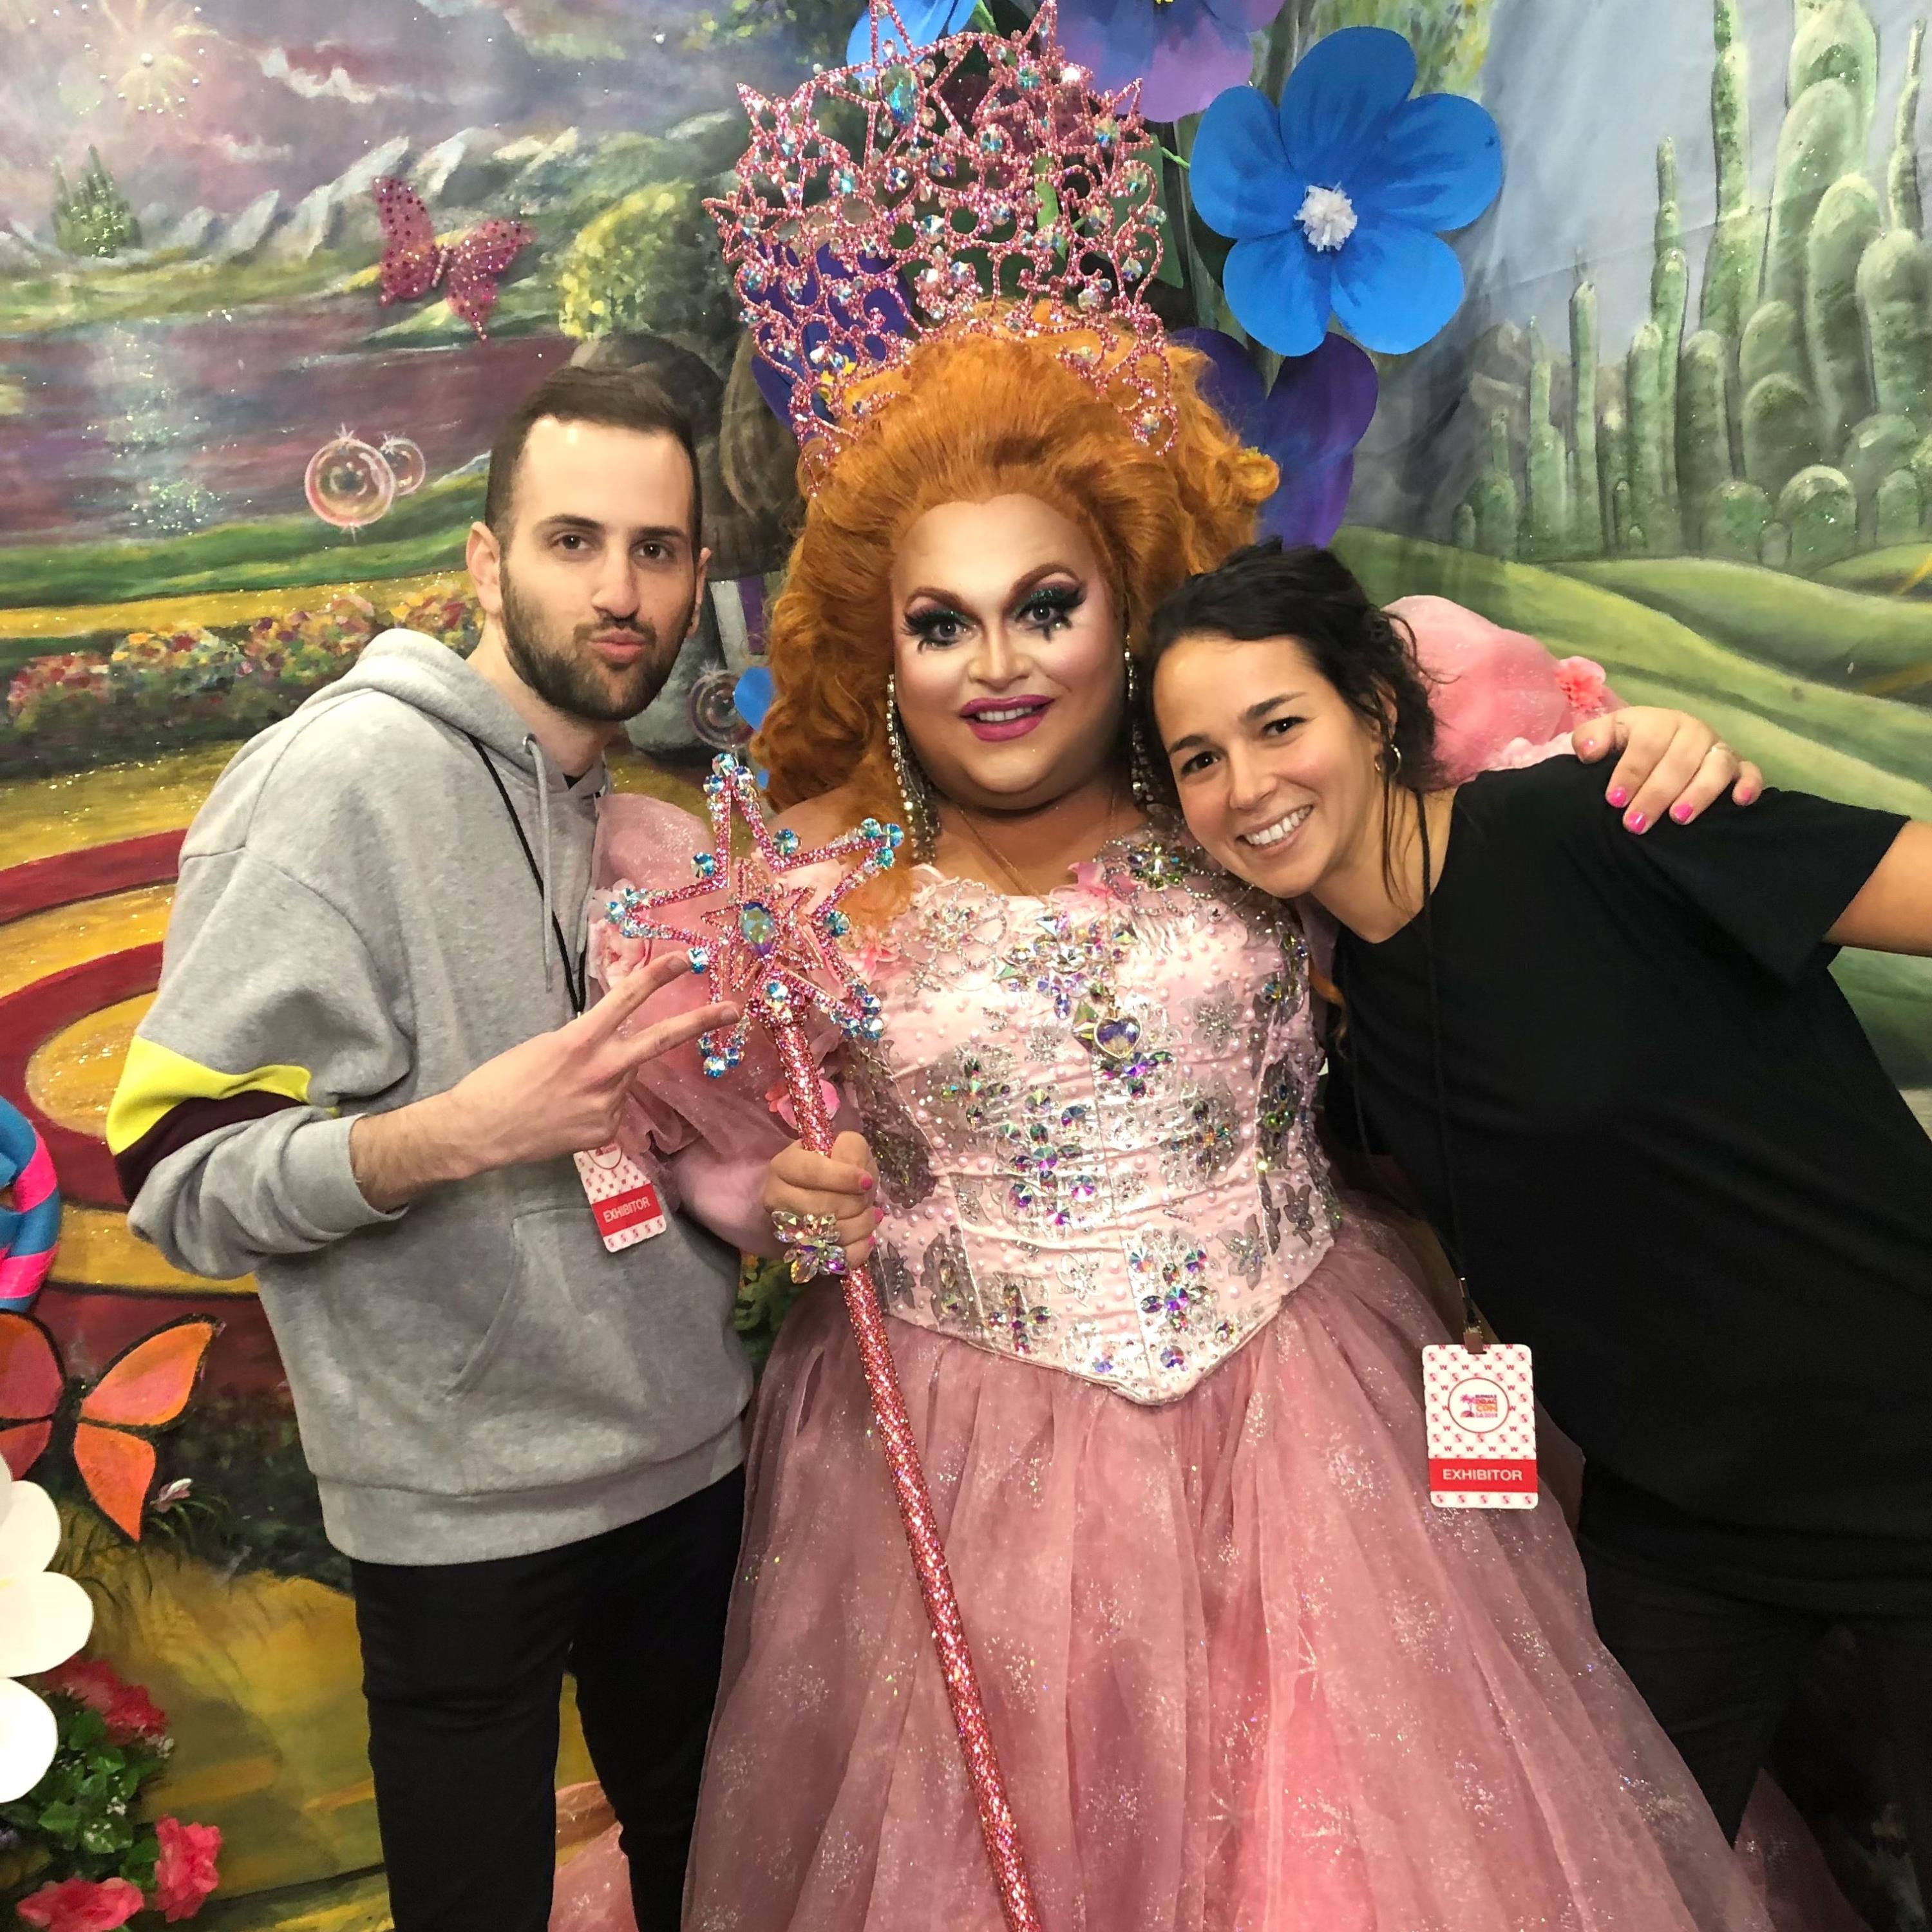  Daniel Berkovitz, Stav Tishler and Ginger Minj at RuPaul's DragCon LA 2018 (courtesy Lightricks)